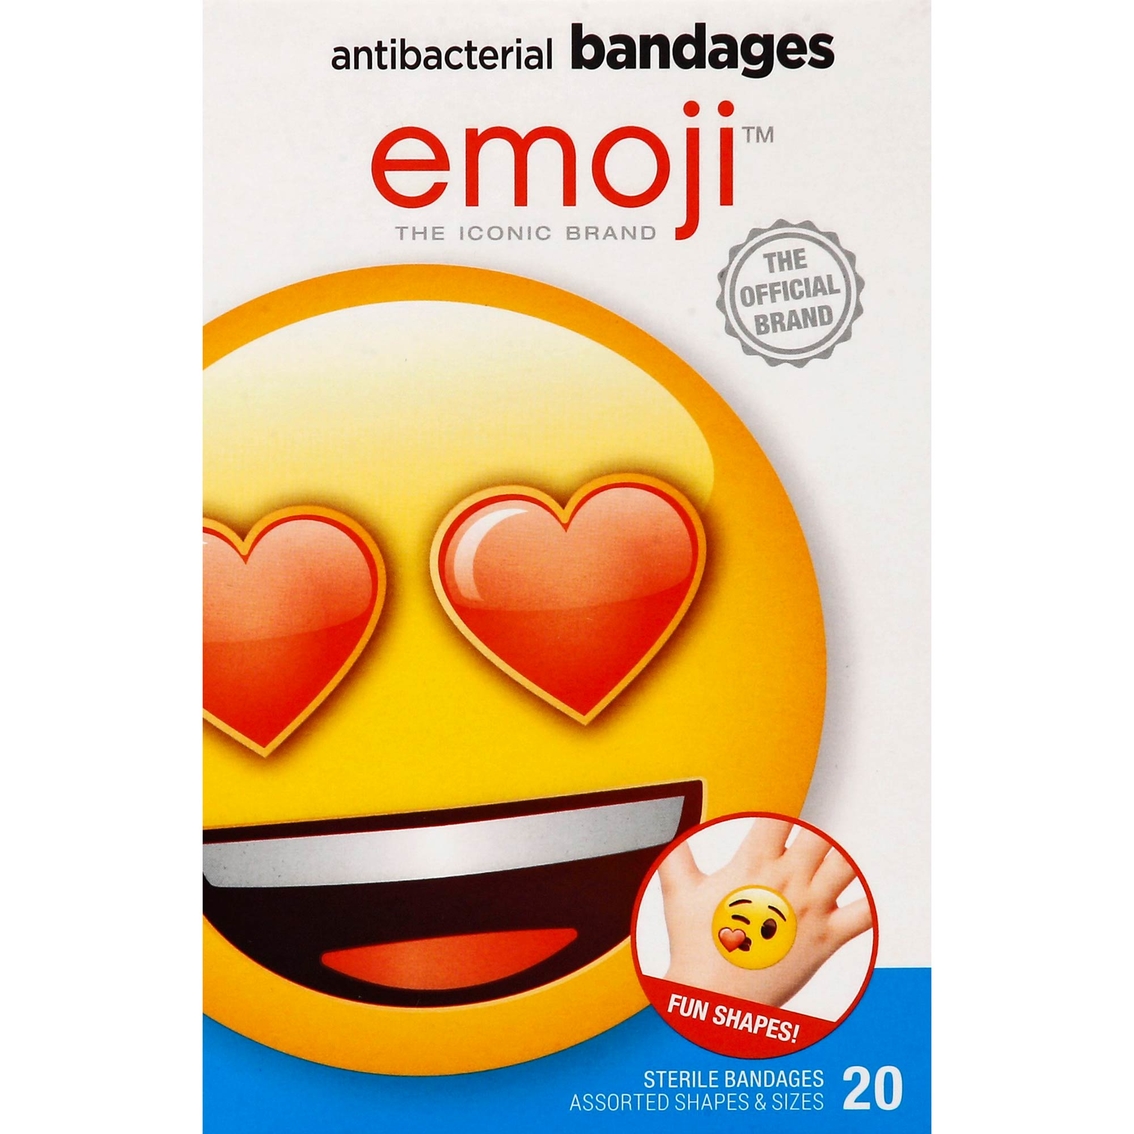 Emoji Antibacterial Bandages 20 ct. - Image 2 of 4